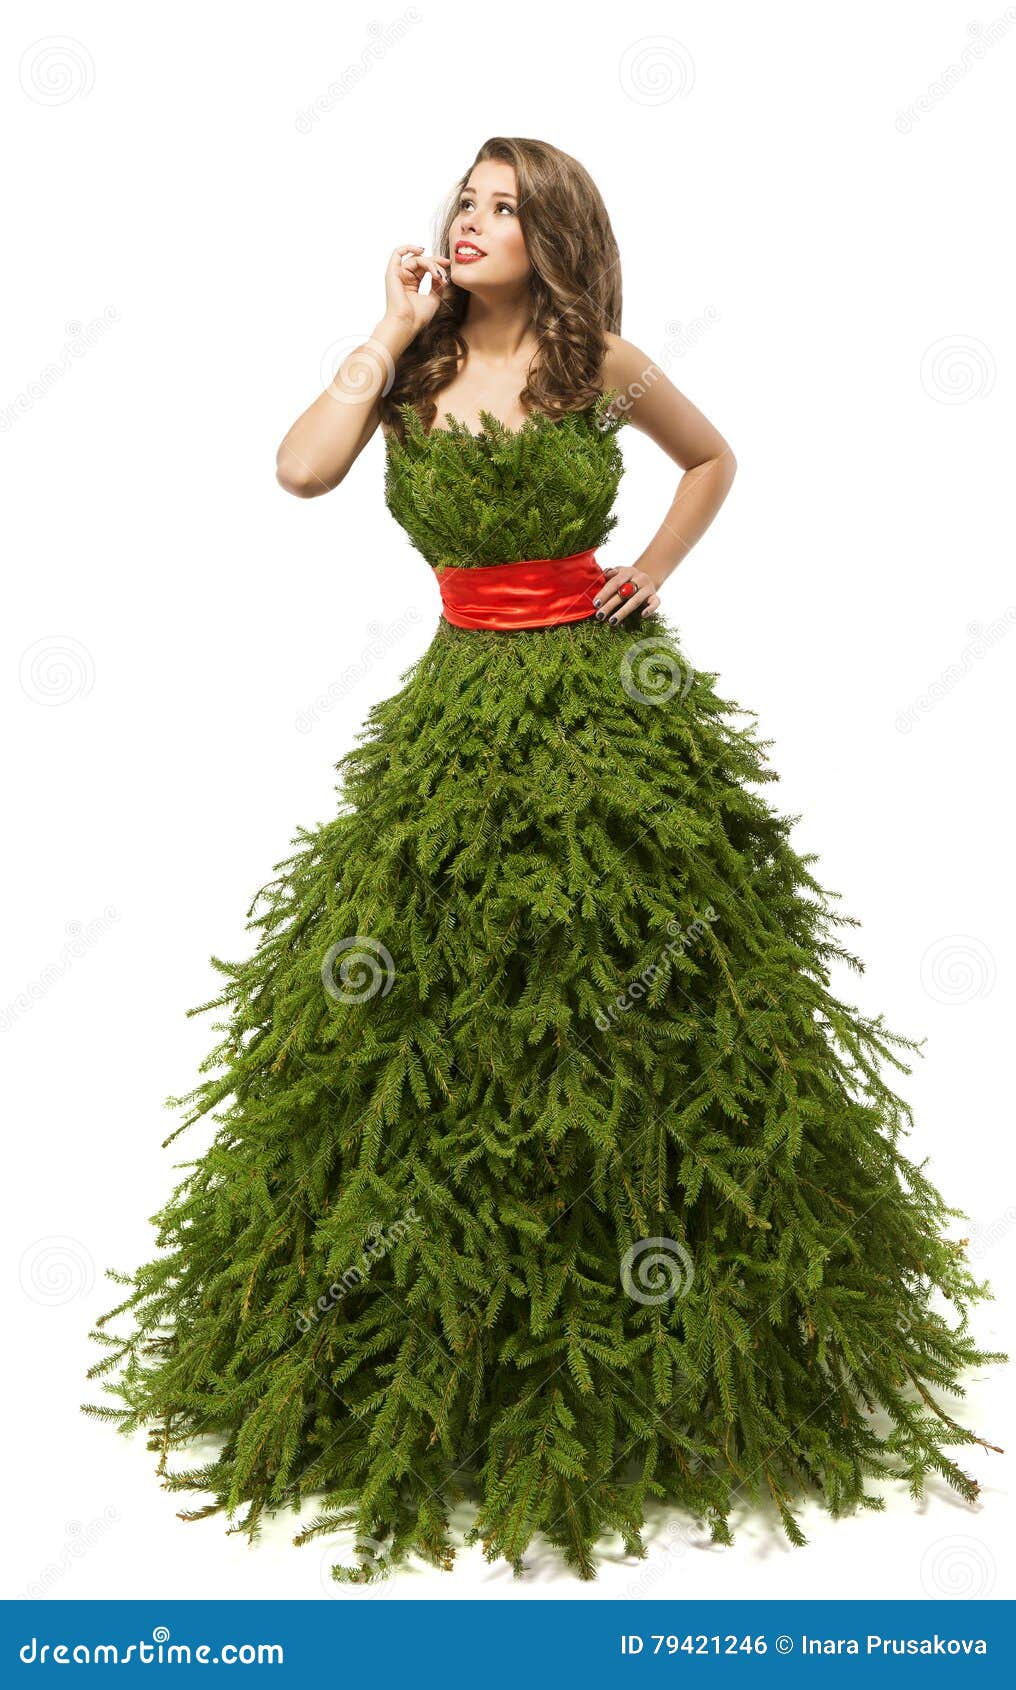 Abito Natale.Vestito Dalla Donna Dell Albero Di Natale Modello Di Moda In Abito Creativo Di Natale Fotografia Stock Immagine Di Bello Natale 79421246